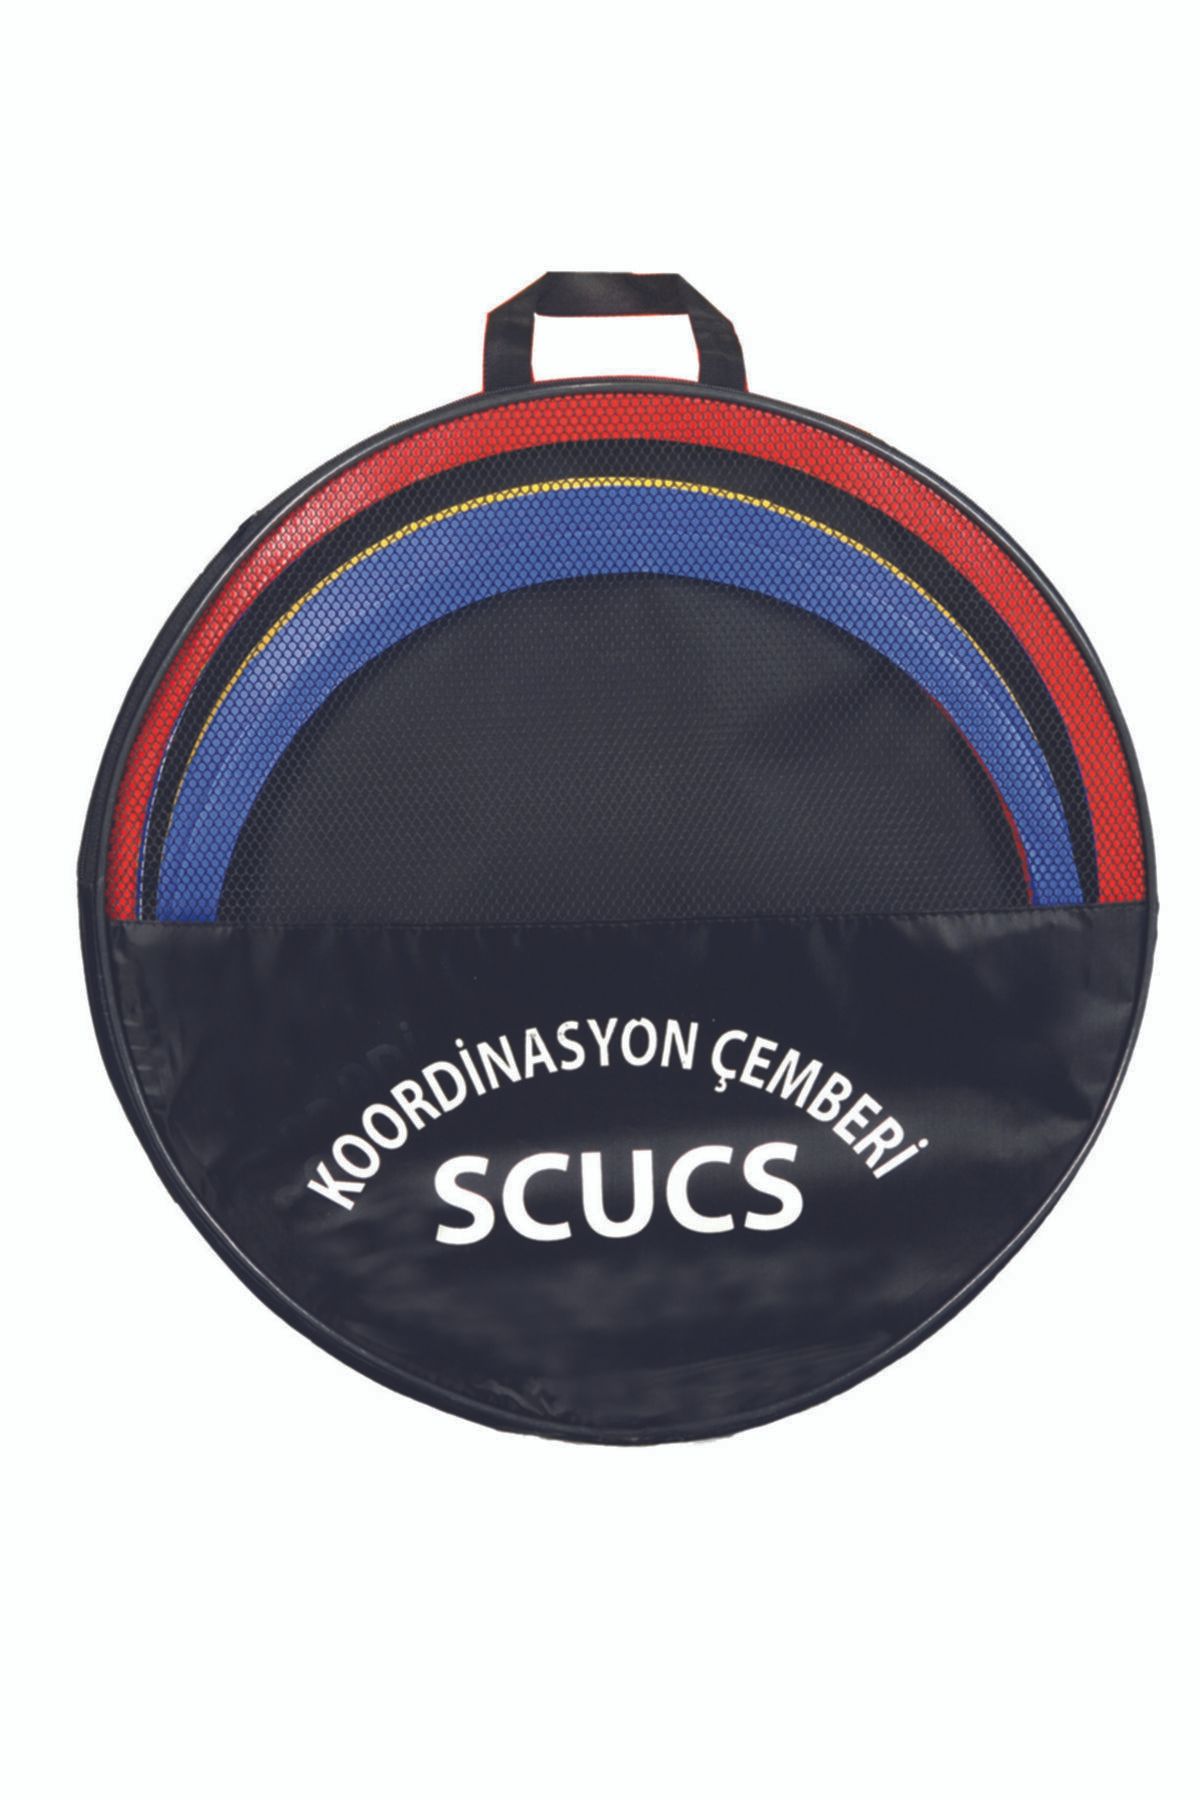 SCUCS Koordinasyon Çemberi-hız Halkası - Sc10562